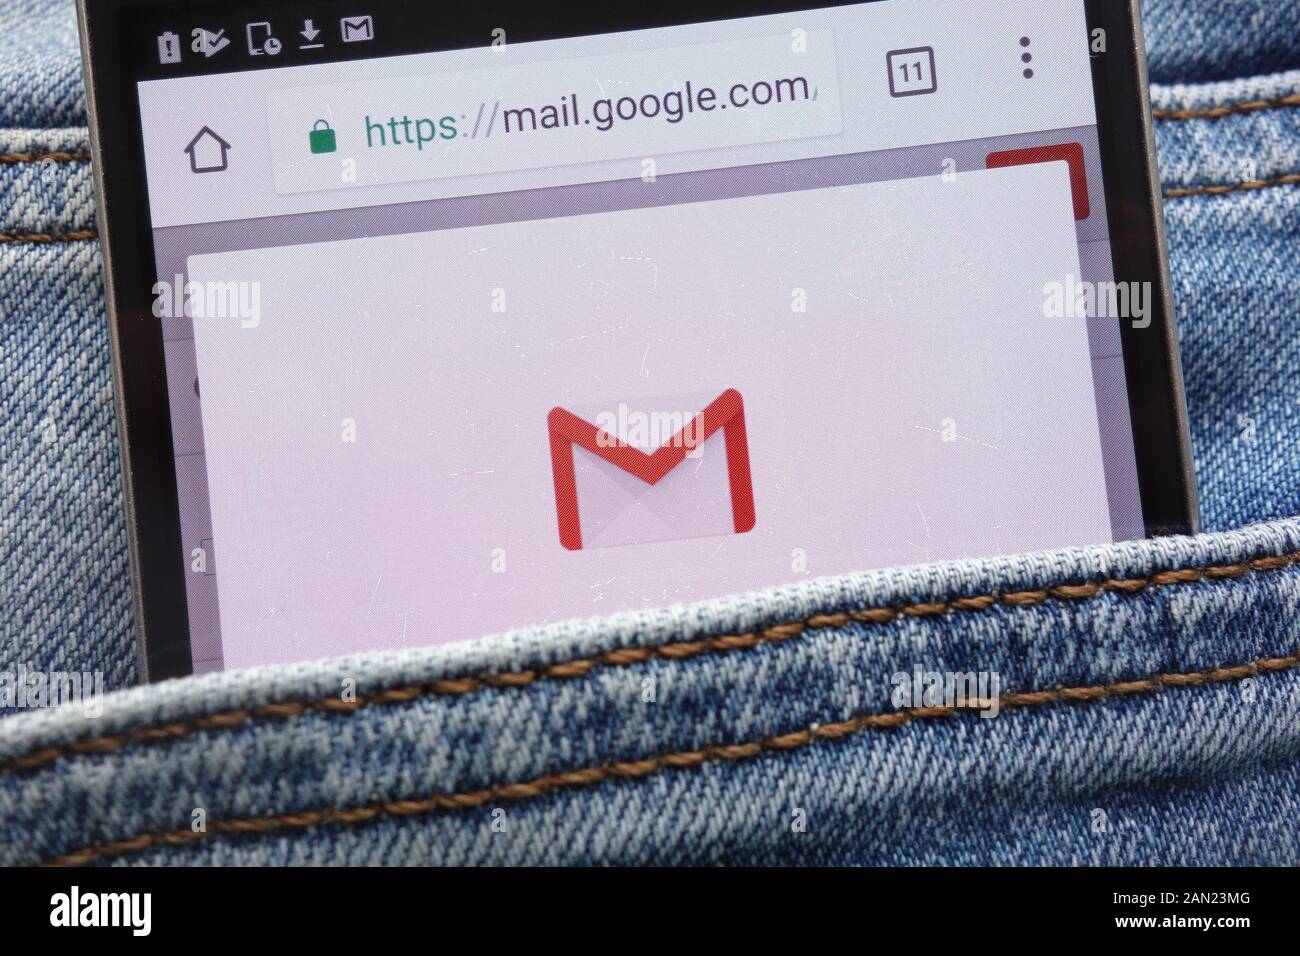 Google Mail (Gmail) site web affiché sur smartphone caché dans la poche de jeans Banque D'Images